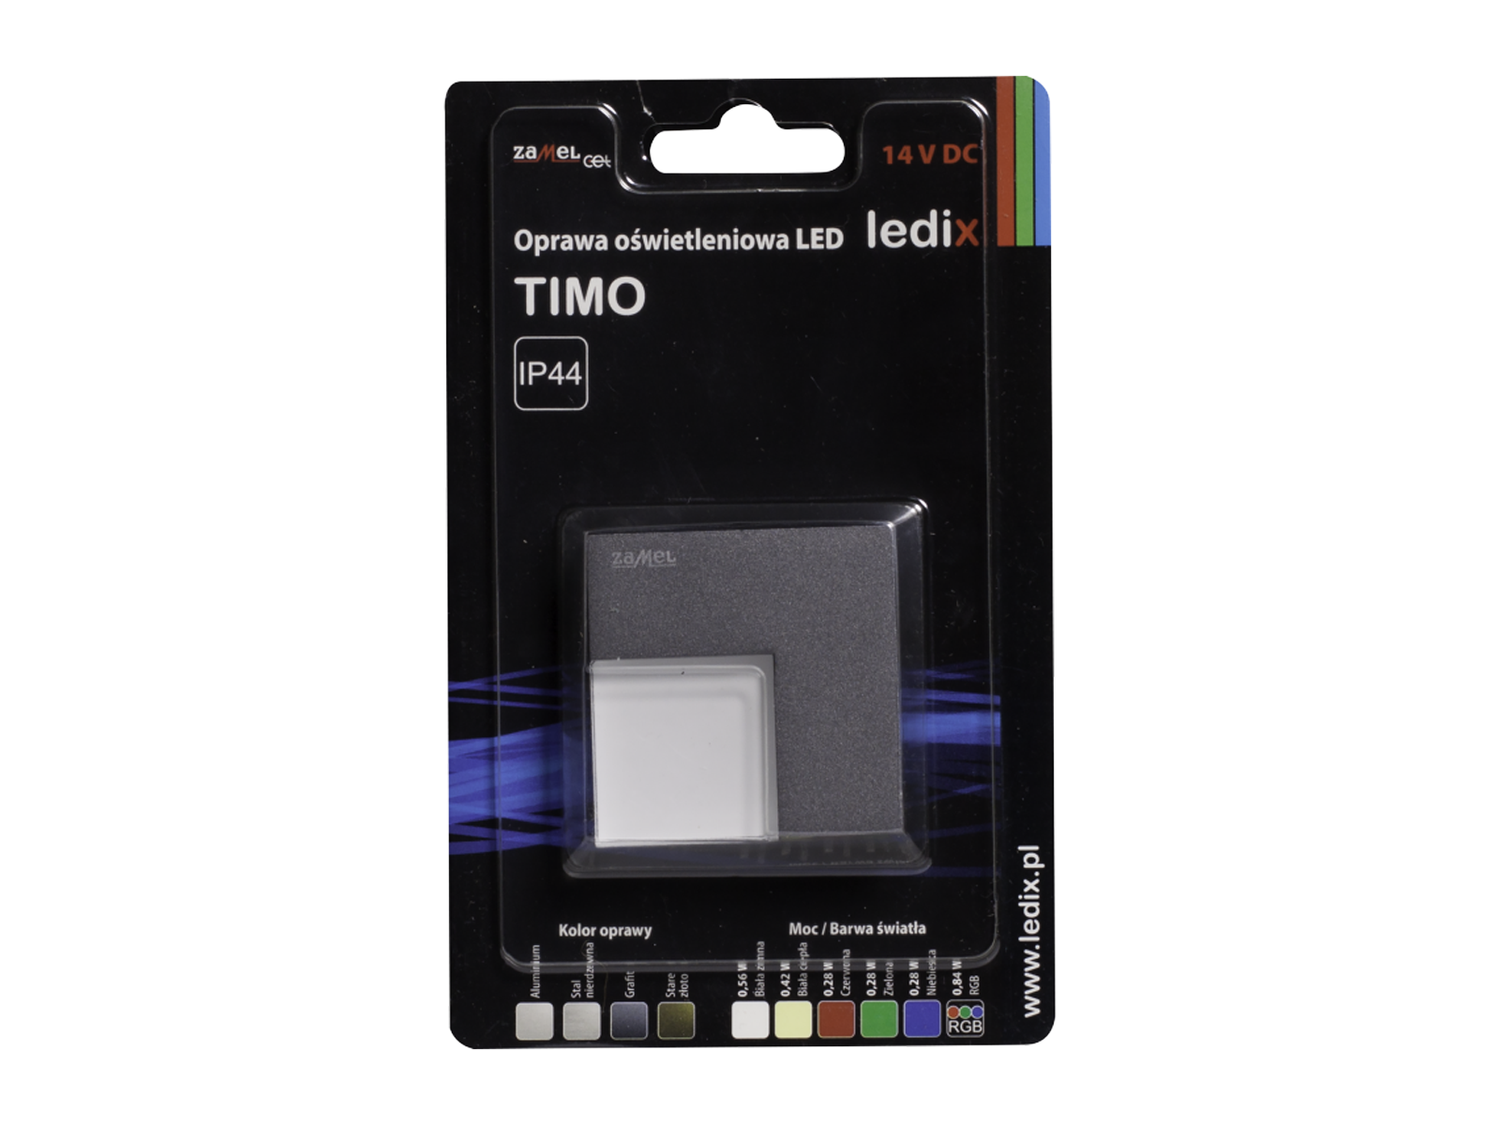 Svítidlo LED na omítku bez rámečku LEDIX TIMO 14V DC, grafit, teplá bílá, IP44